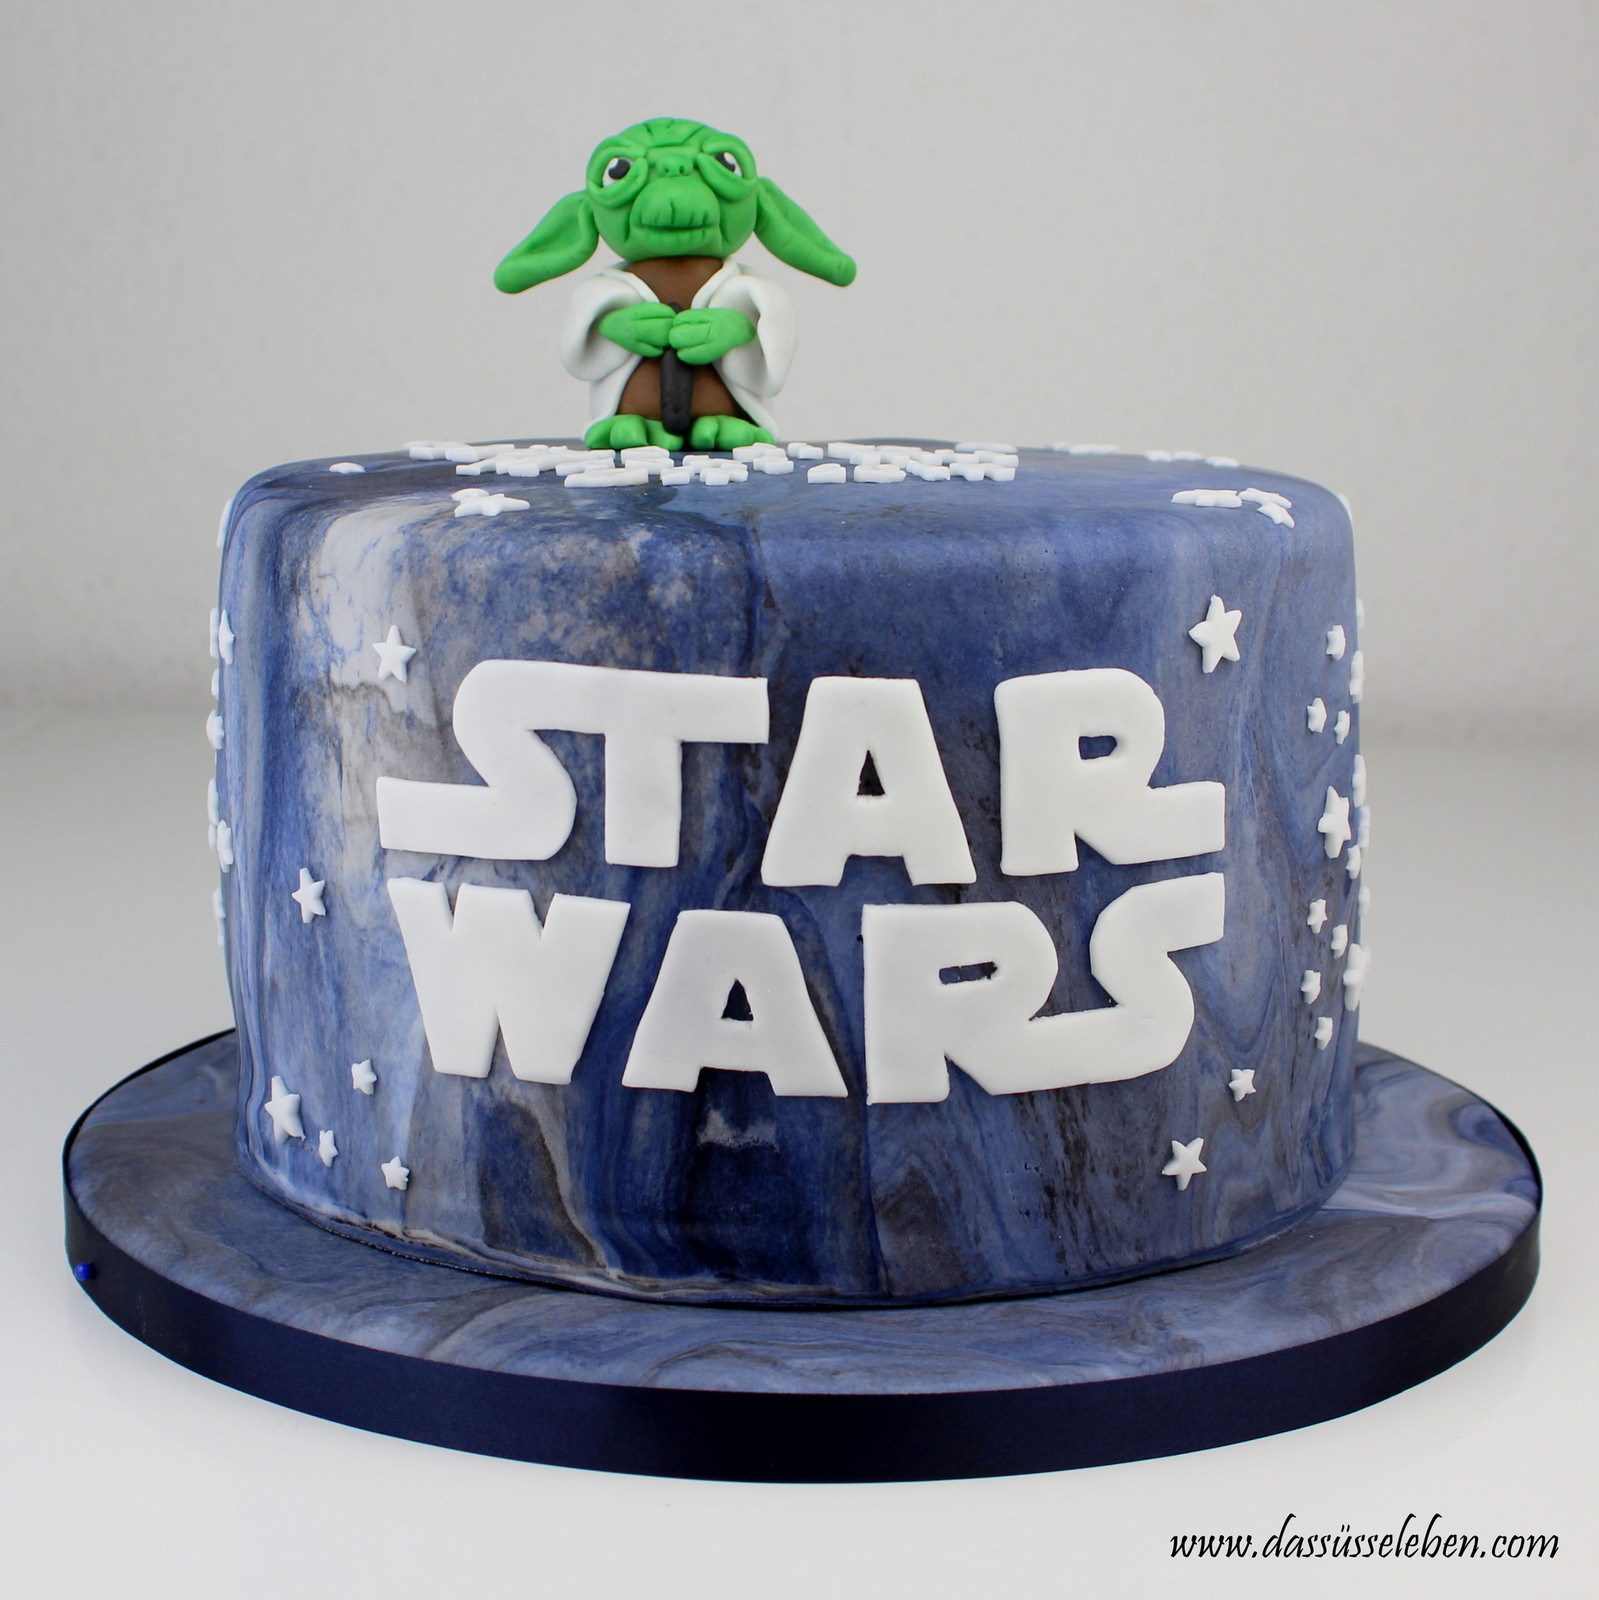 Star Wars Geburtstagstorte
 Rezept Star Wars Torte mit Yoda